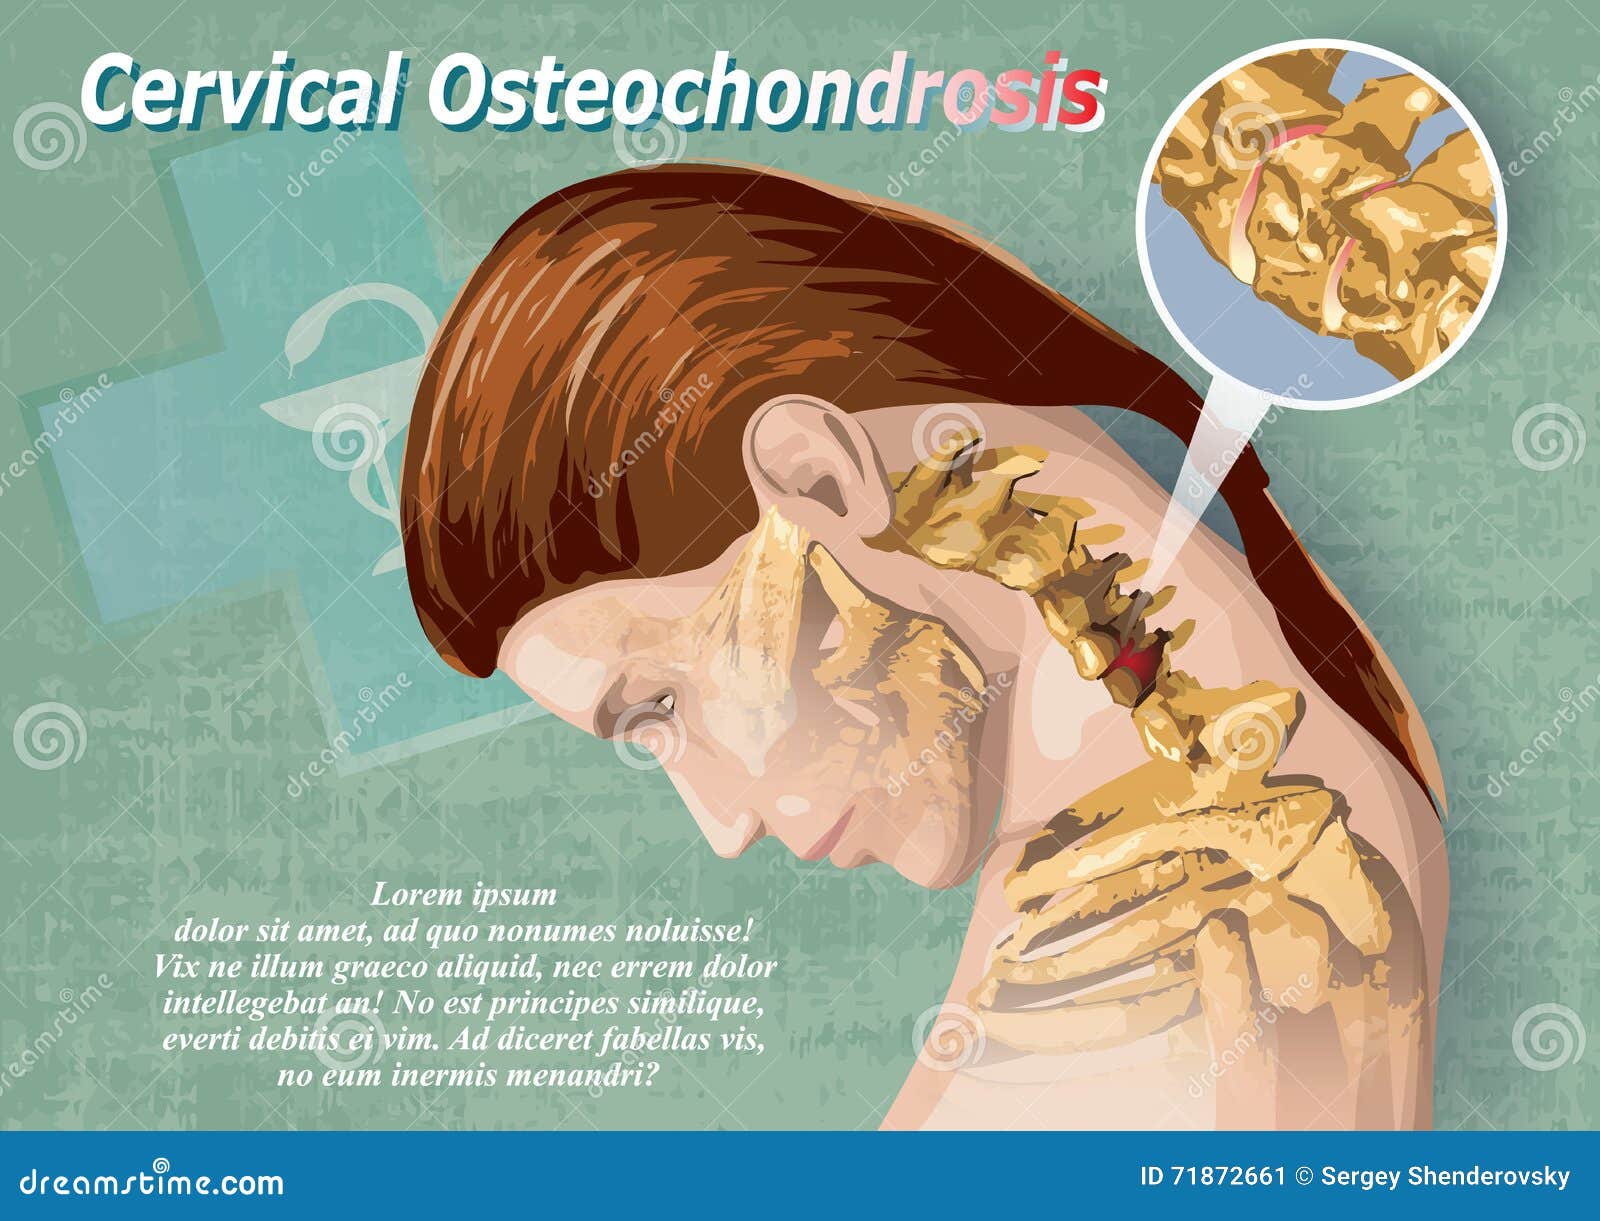 Neck osteochondrosis exercises, A lek eszköze az osteochondrosis - dynarec.hu